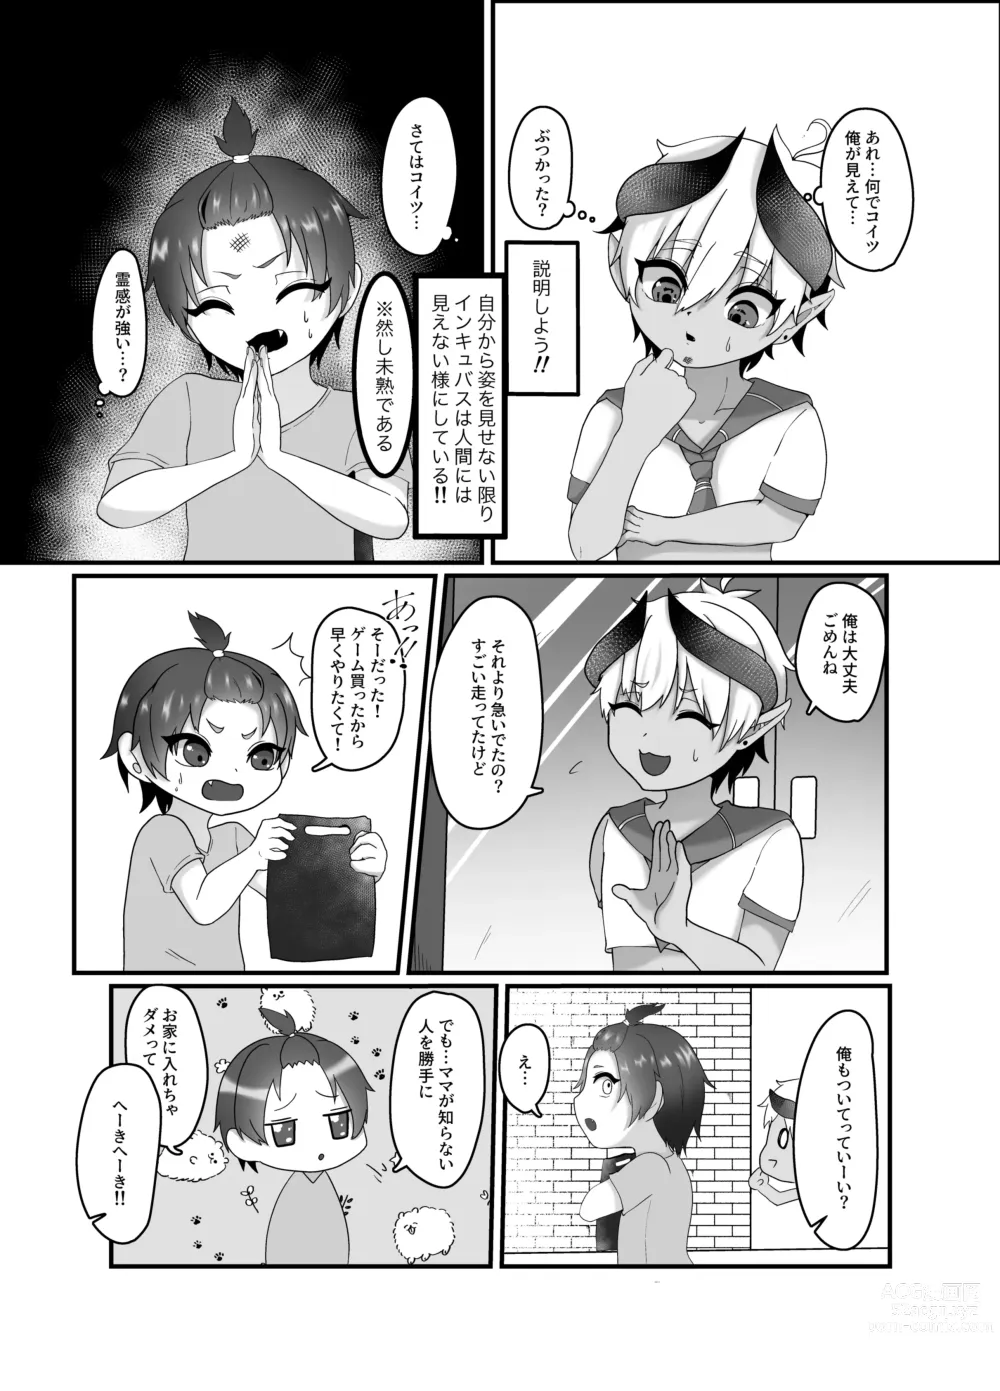 Page 4 of doujinshi 俺とお勉強しよっ!